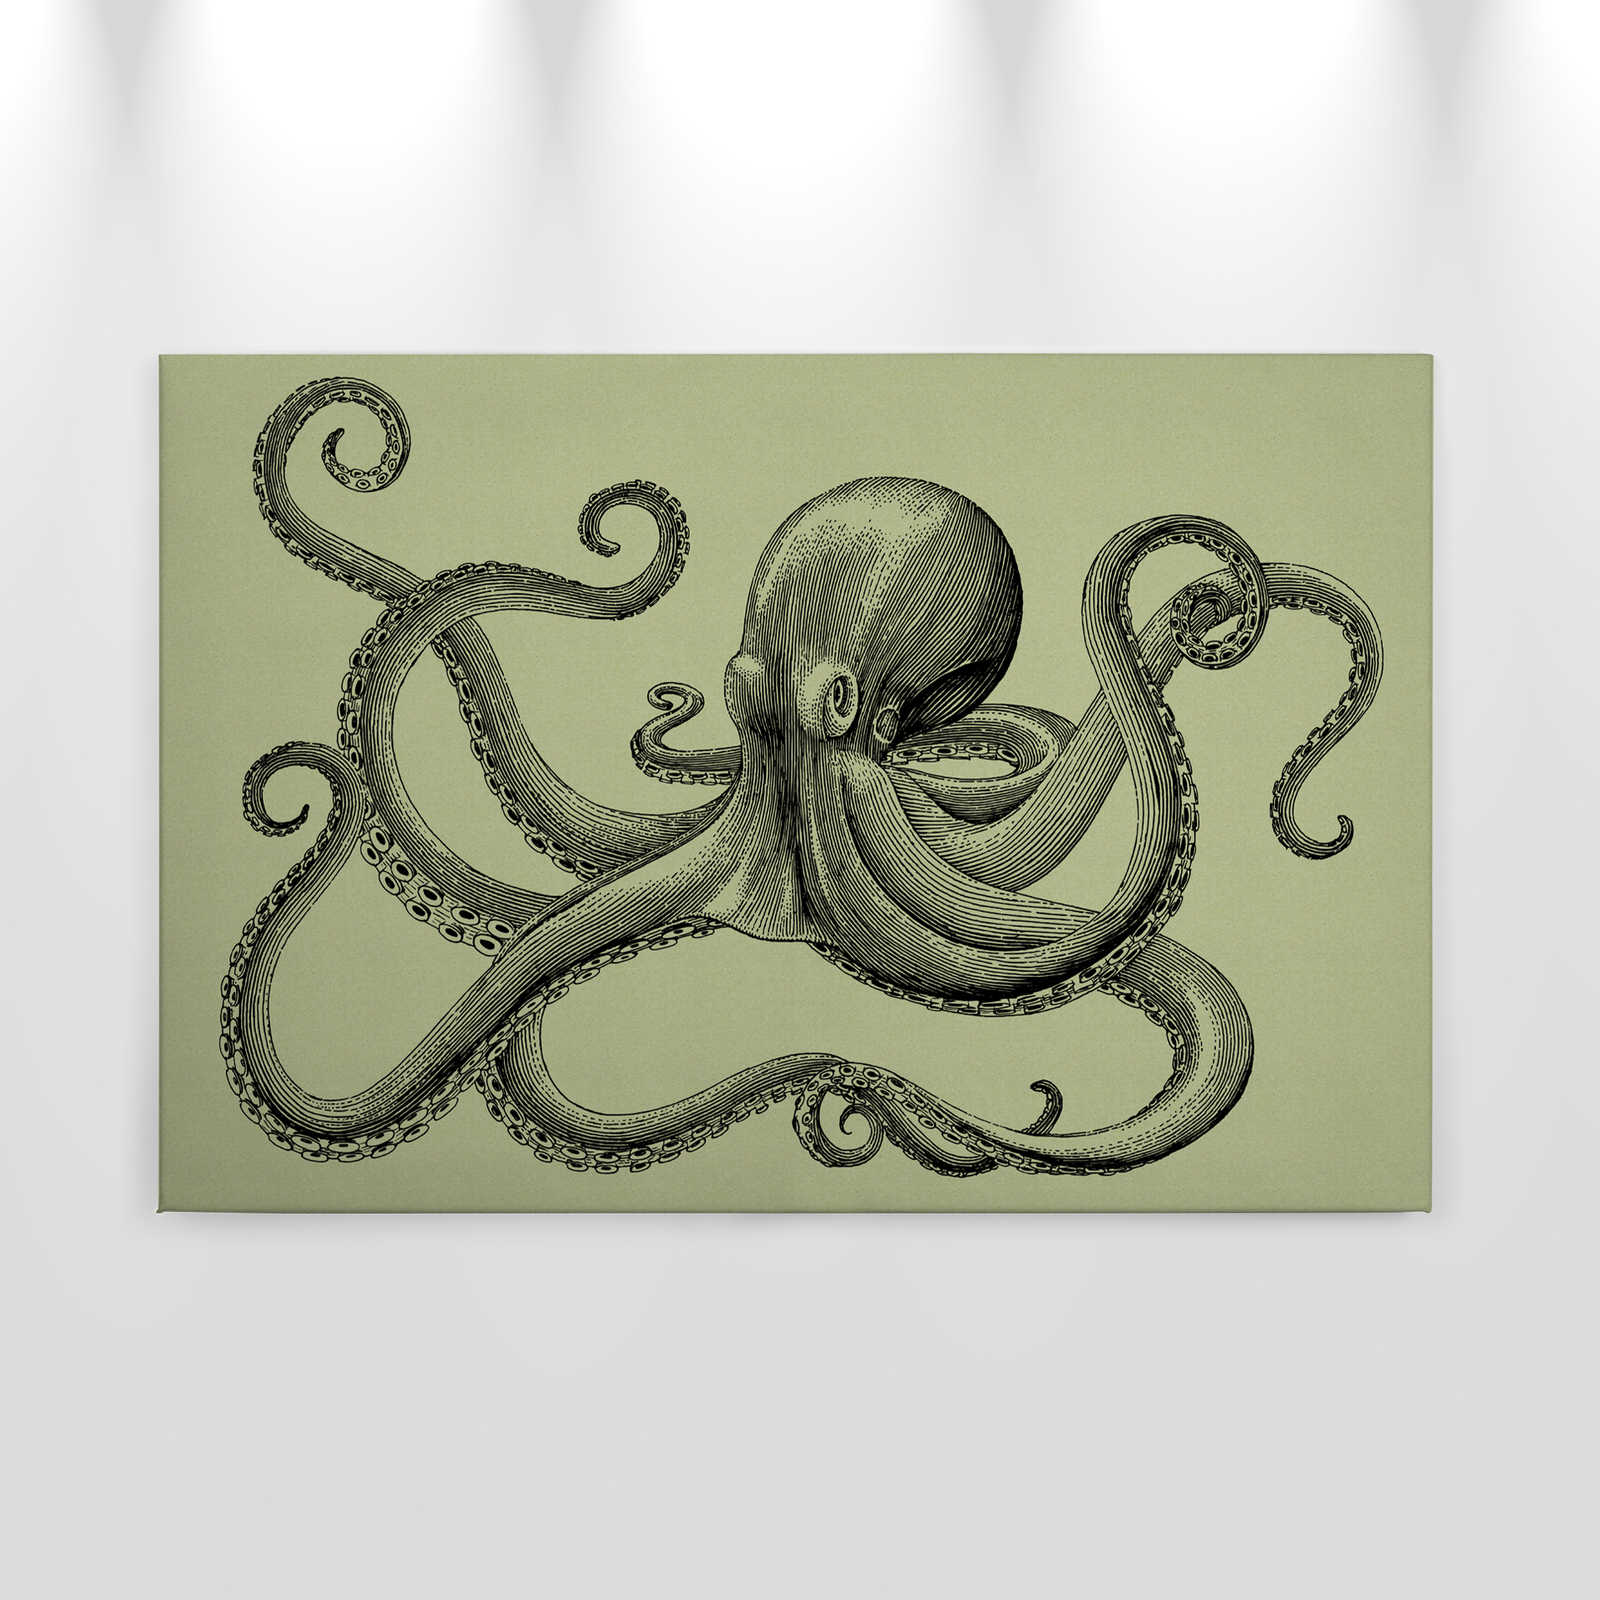             Jules 3 - Canvas schilderij Octopus in schetsstijl & vintage look - Kartonnen structuur - 0.90 m x 0.60 m
        